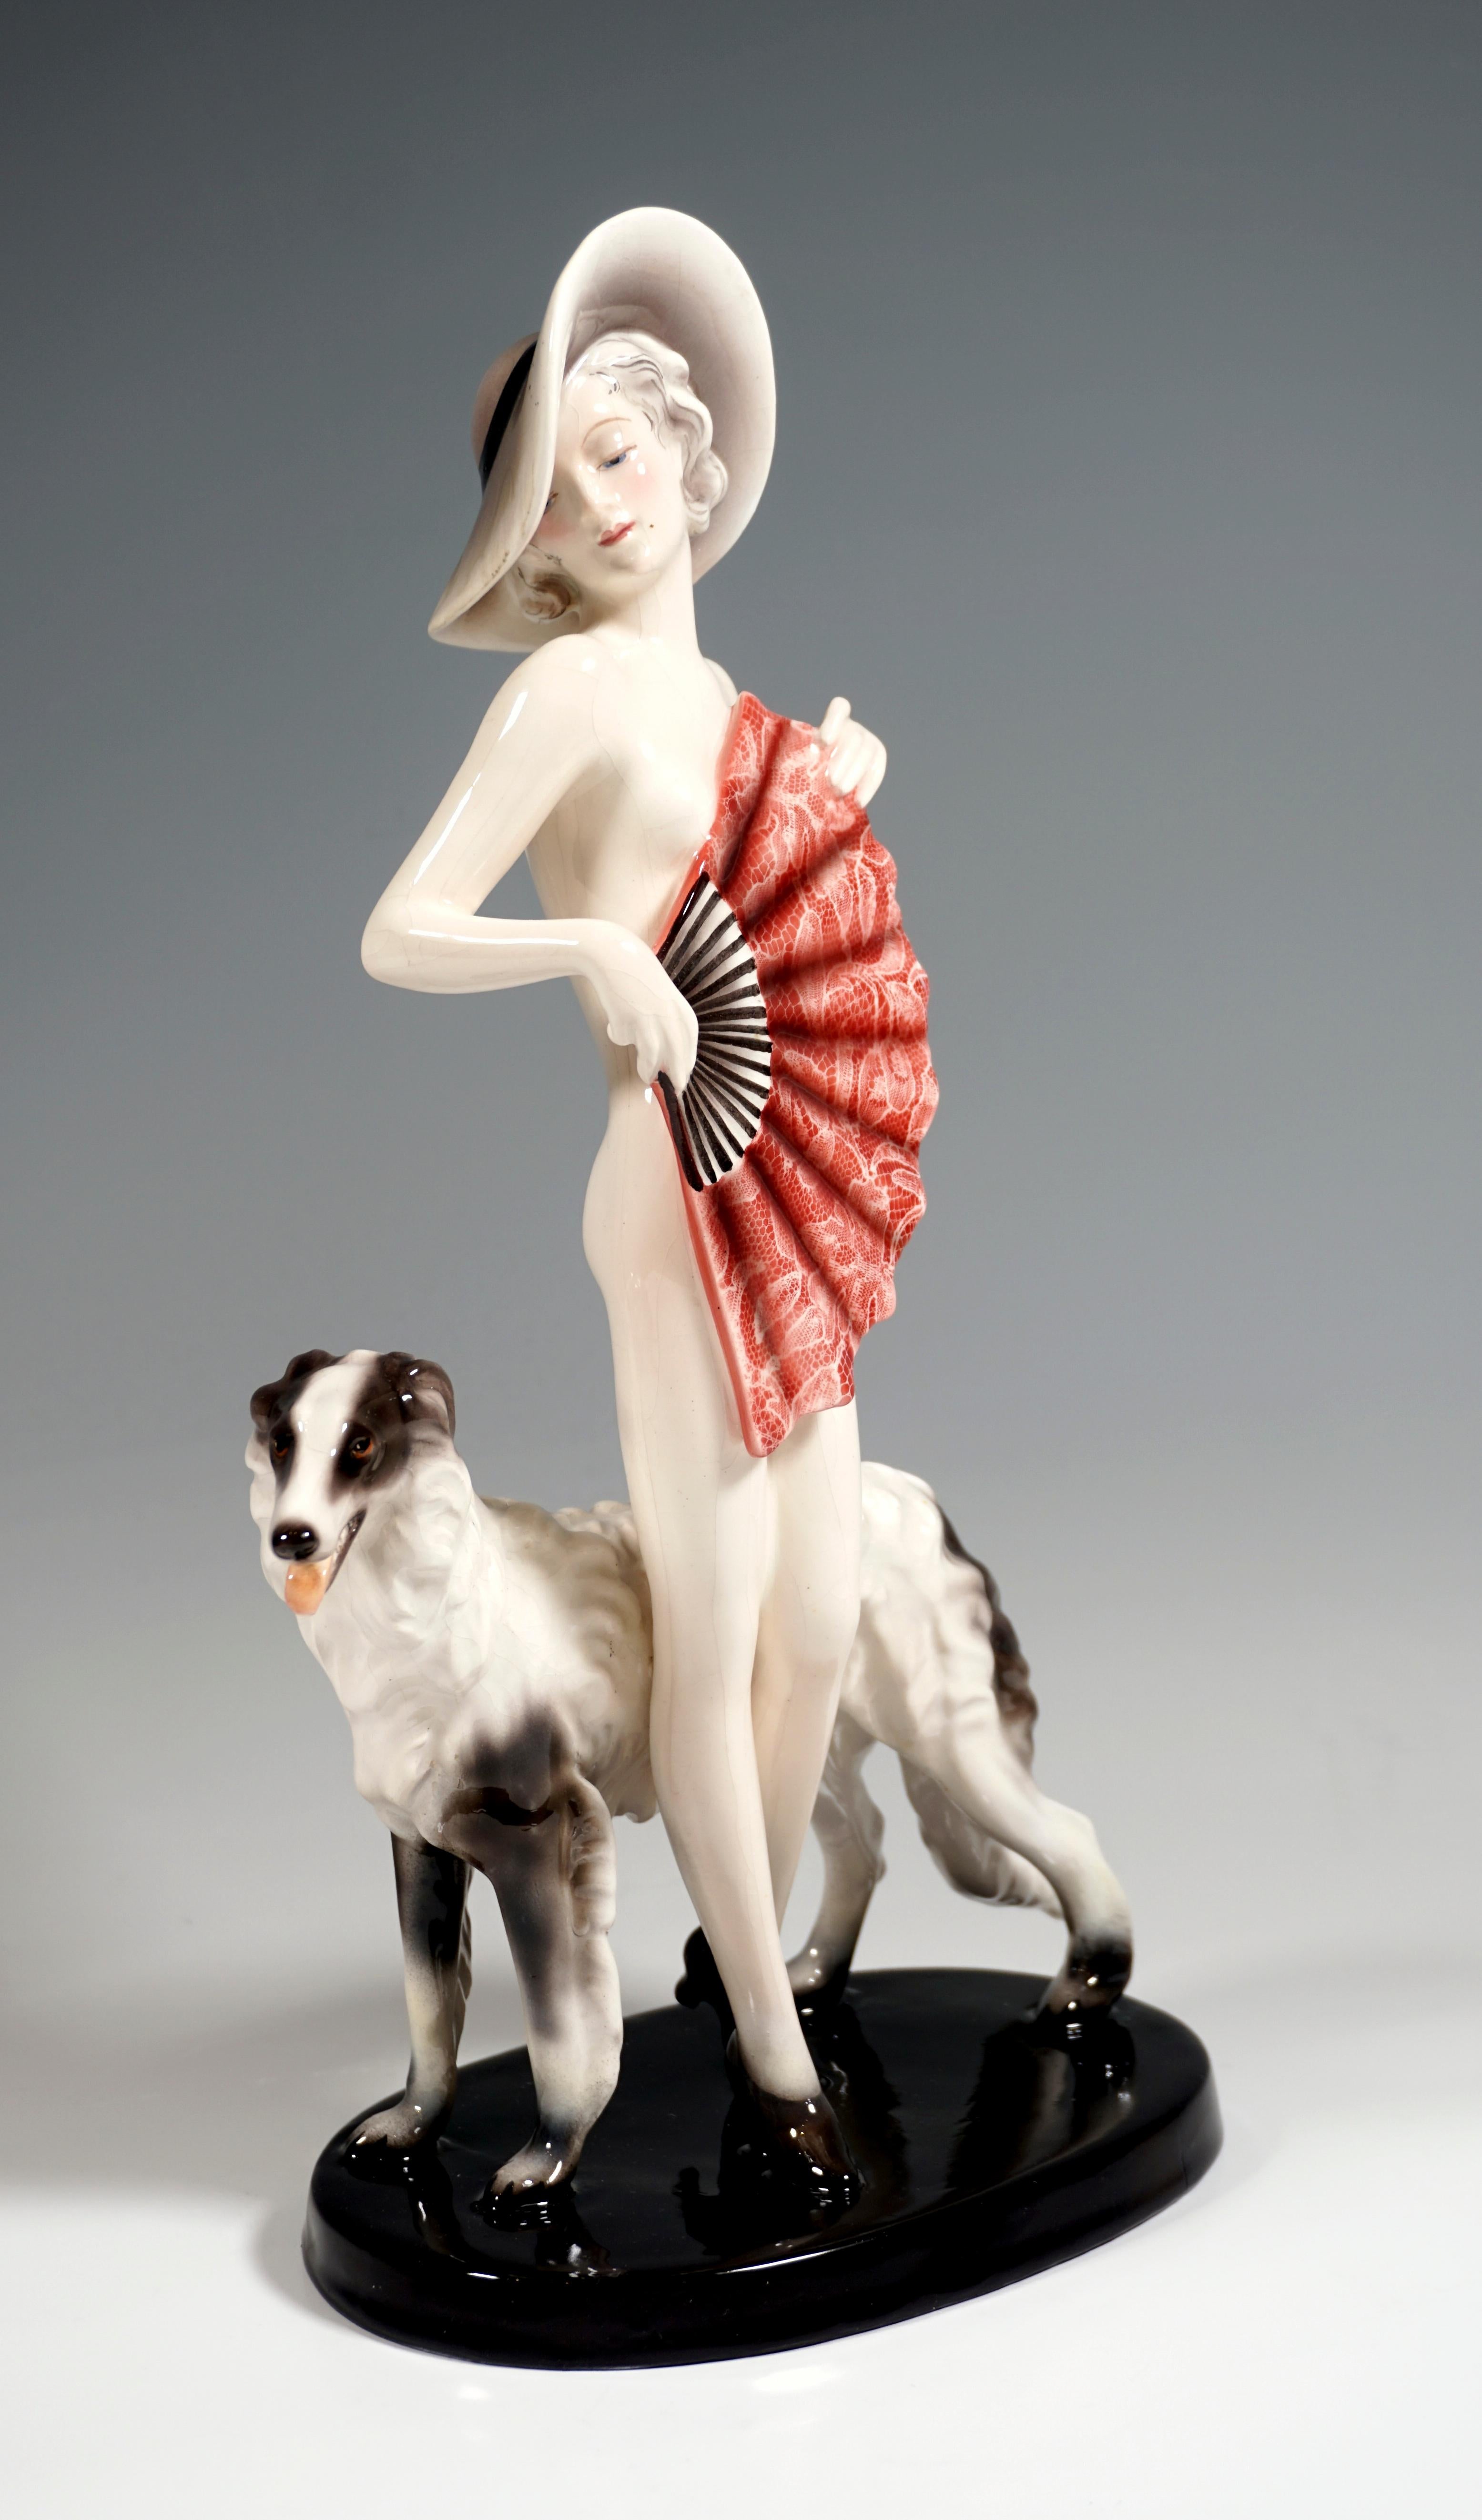 Sehr seltene Goldscheider Keramik-Figur aus den 1930er Jahren:
Stehende junge hübsche Dame mit breitkrempigem Hut auf dem lockigen, kinnlangen Haar, nur mit Absatzschuhen bekleidet und ihre Blöße mit einem großen, roten Fächer bedeckend, den sie in